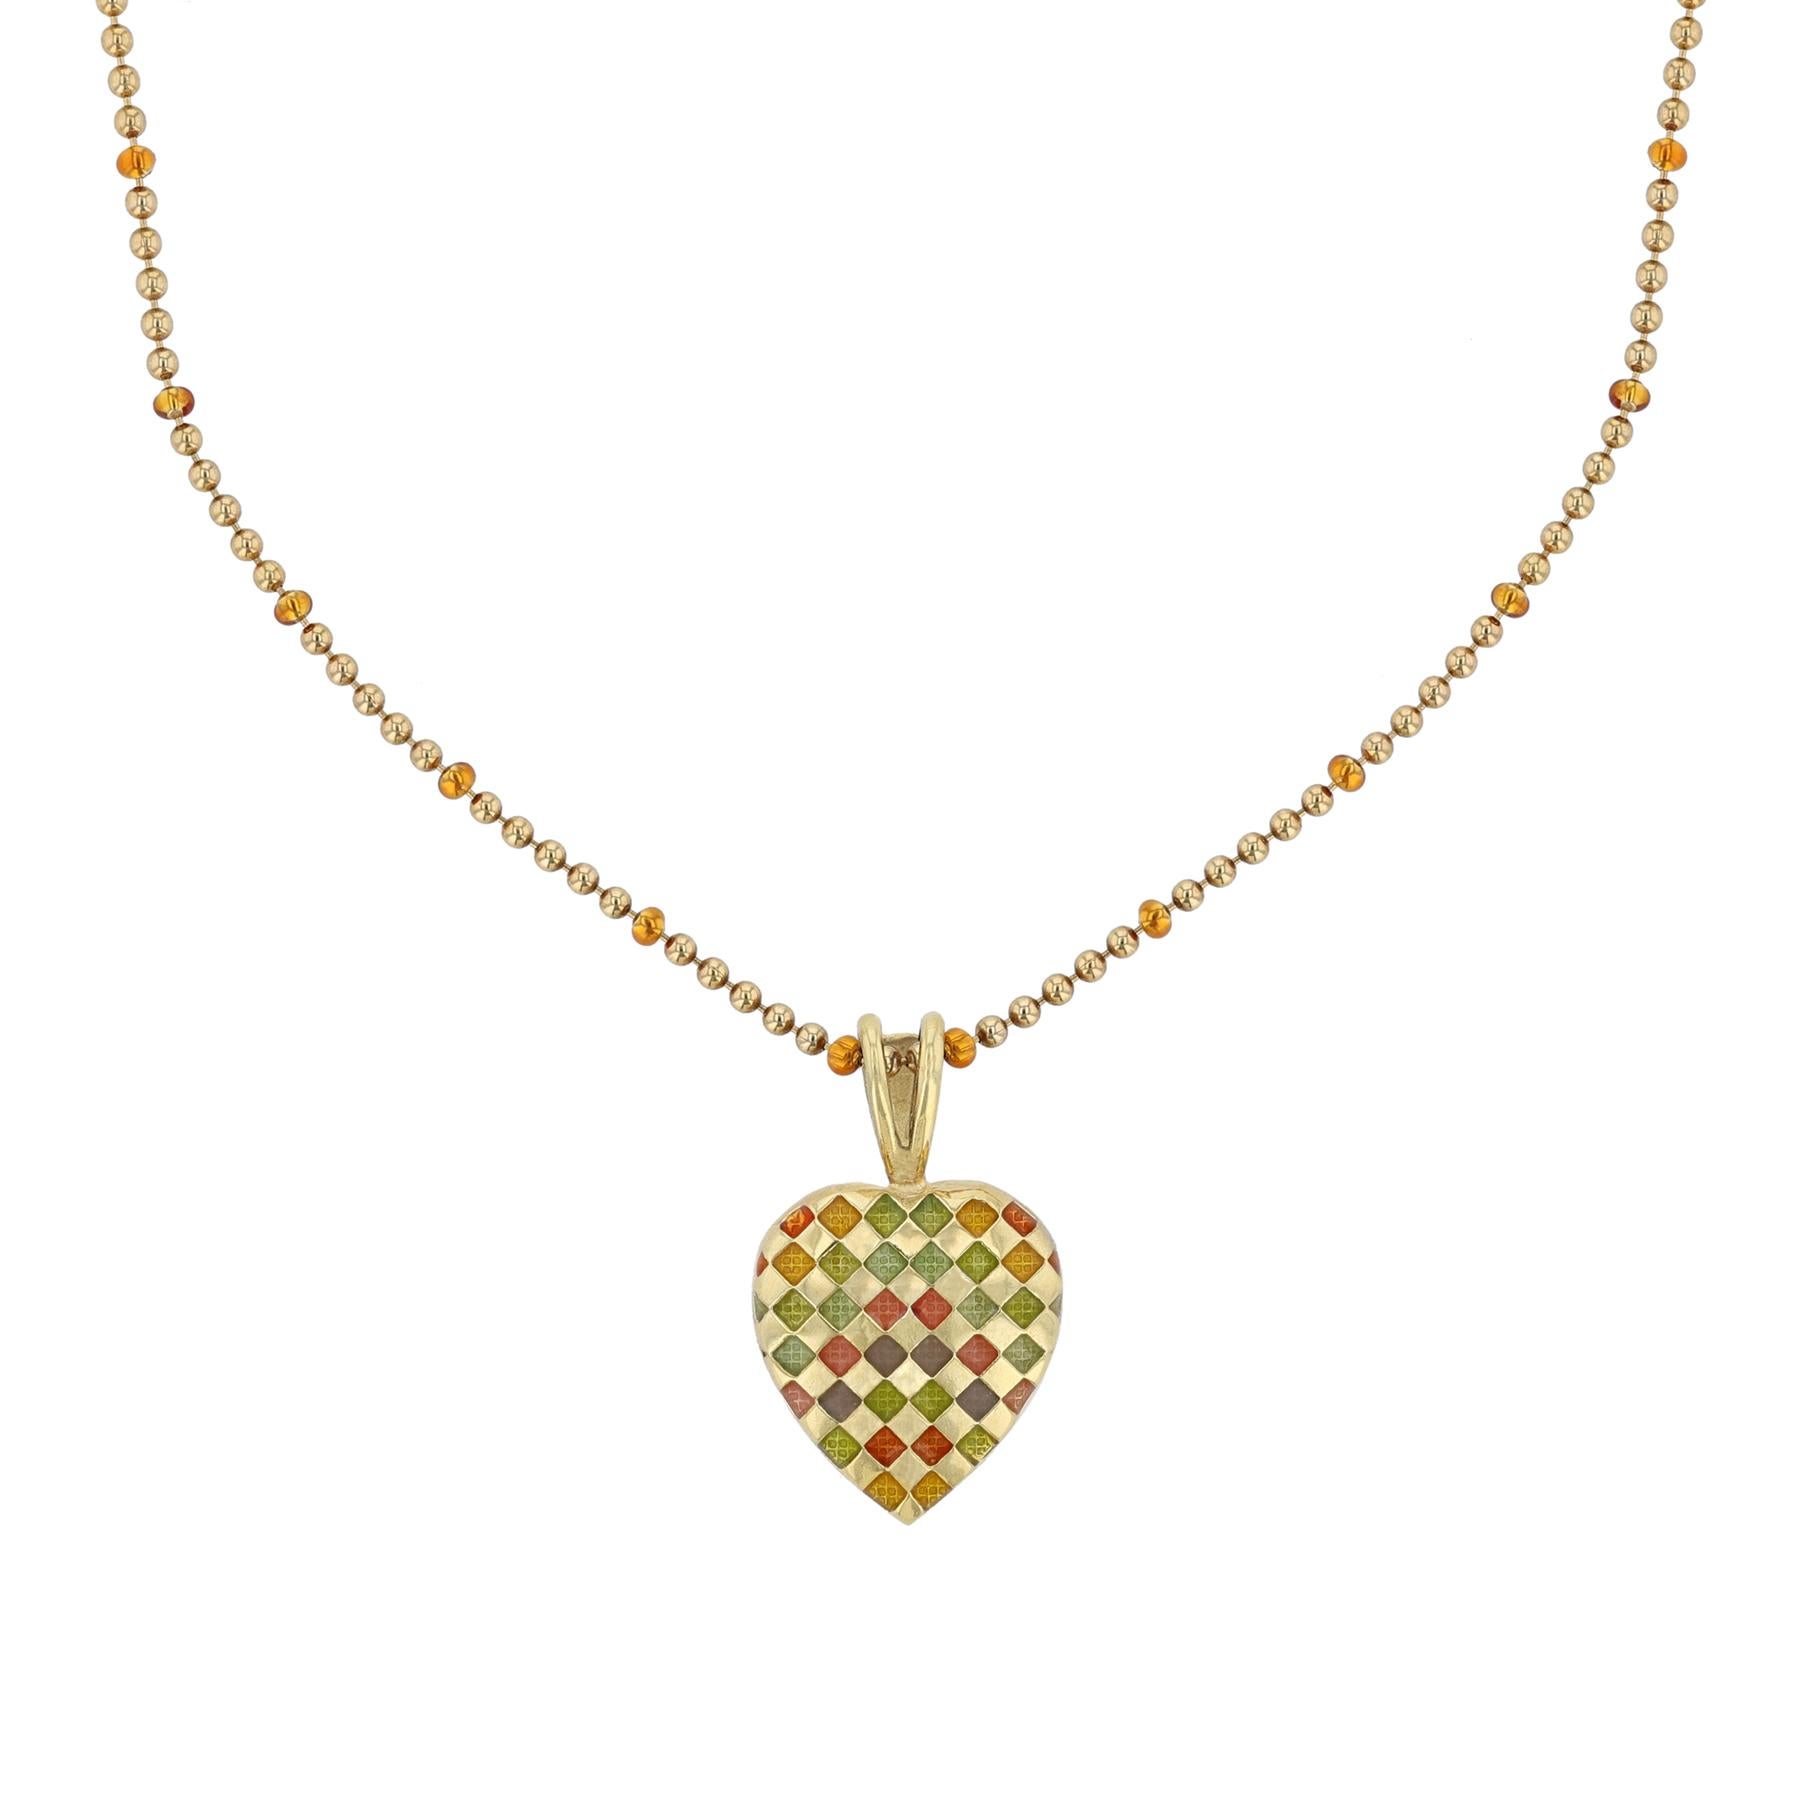 Ce collier est réalisé en or jaune 18K et en émail multicolore. Il comporte un pendentif en forme de cœur avec un motif en damier.